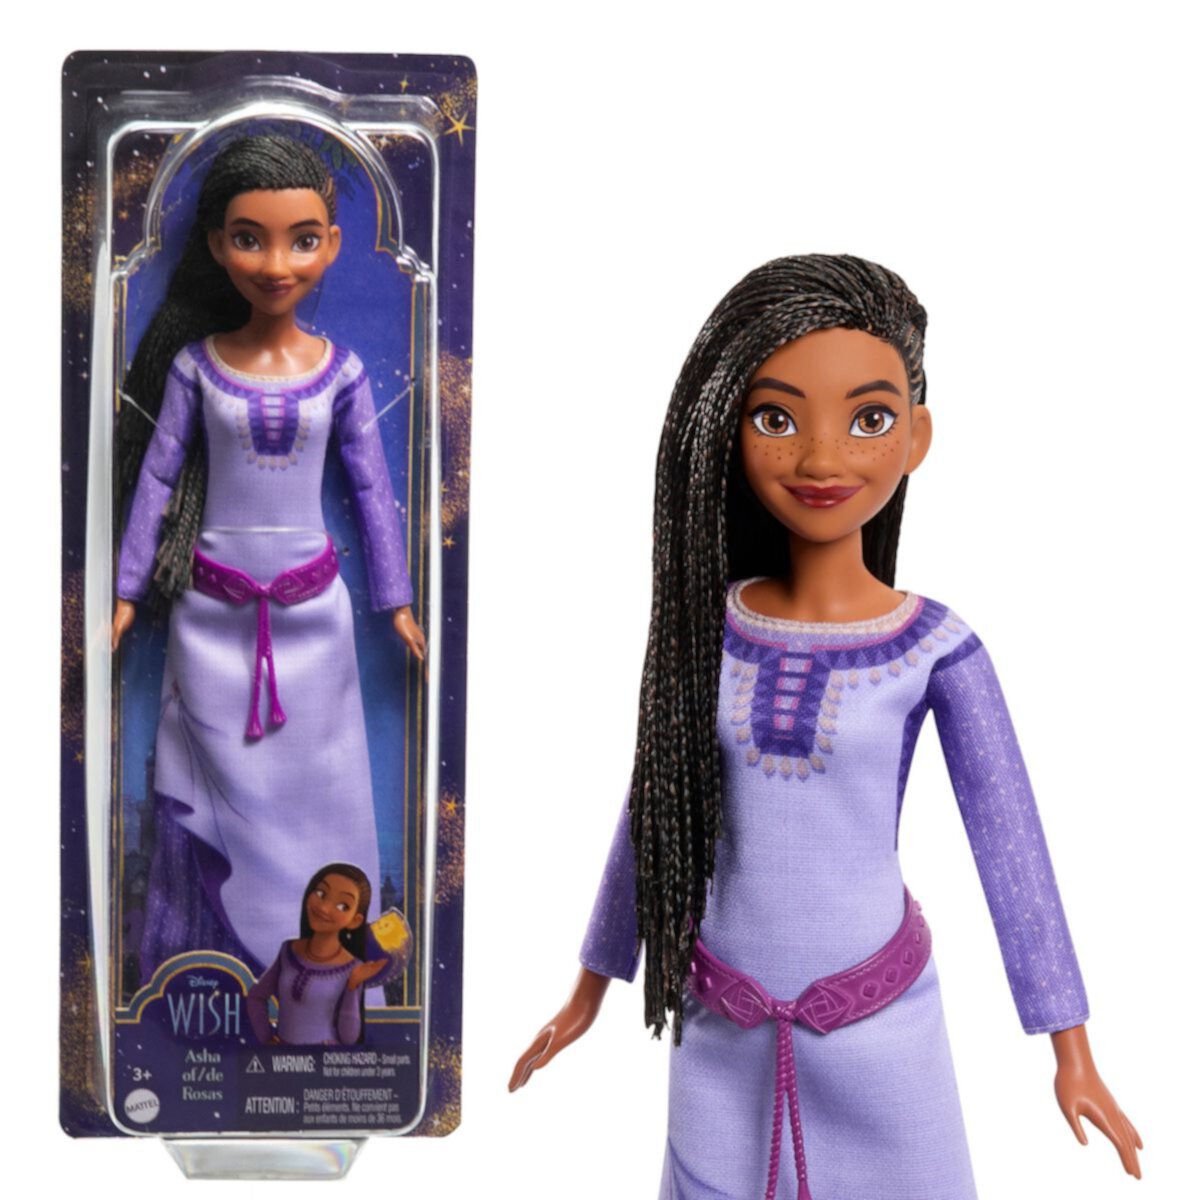 Подвижная модная кукла Disney's Wish Asha of Rosas и аксессуары от Mattel Mattel